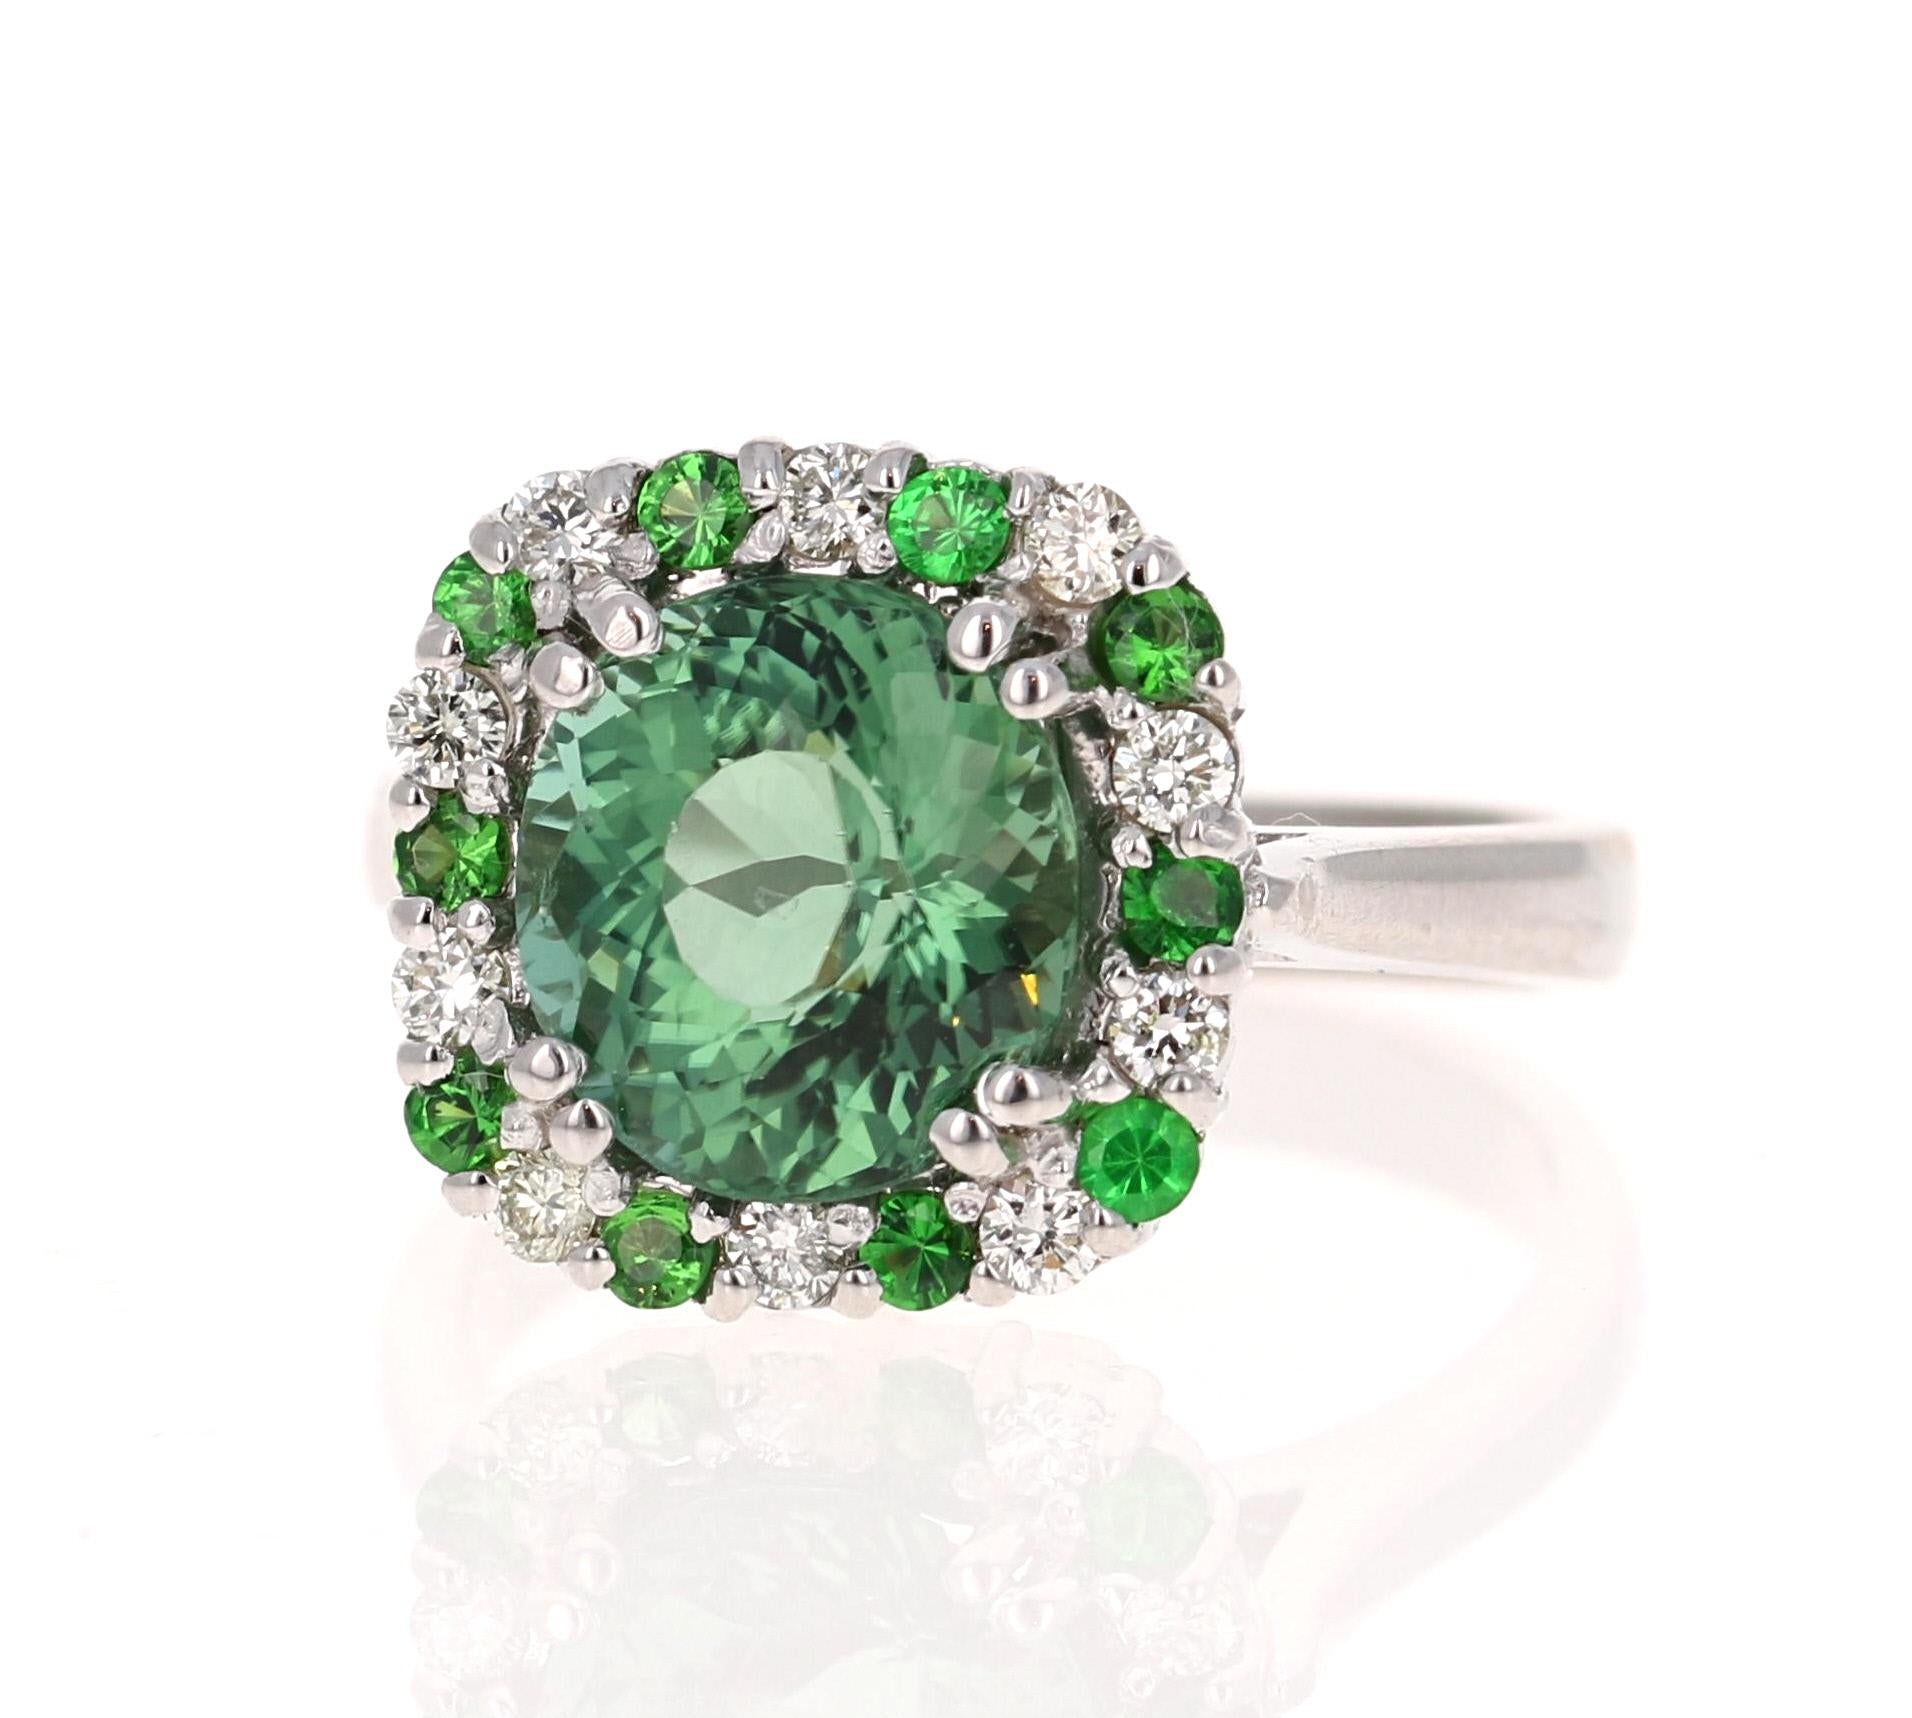 Eine Schönheit, die mit Sicherheit nichts weniger als ein Statement ist! 

Dieser Ring hat einen wunderschönen grünen Turmalin mit Rundschliff, der 3,09 Karat wiegt und von abwechselnden Tsavoriten und Diamanten mit einem Gesamtgewicht von 0,55